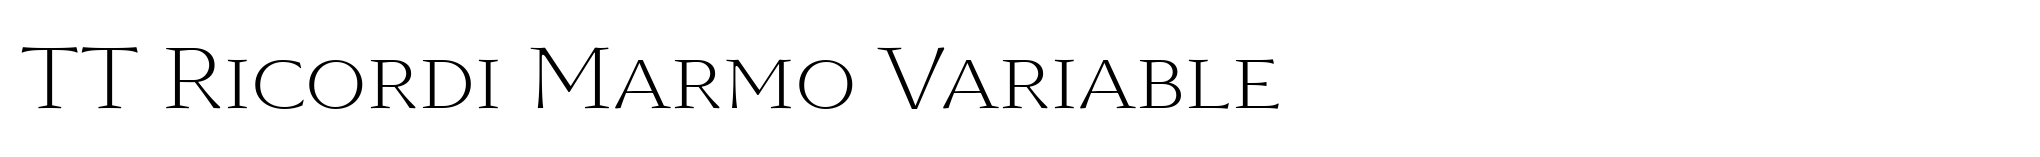 TT Ricordi Marmo Variable image